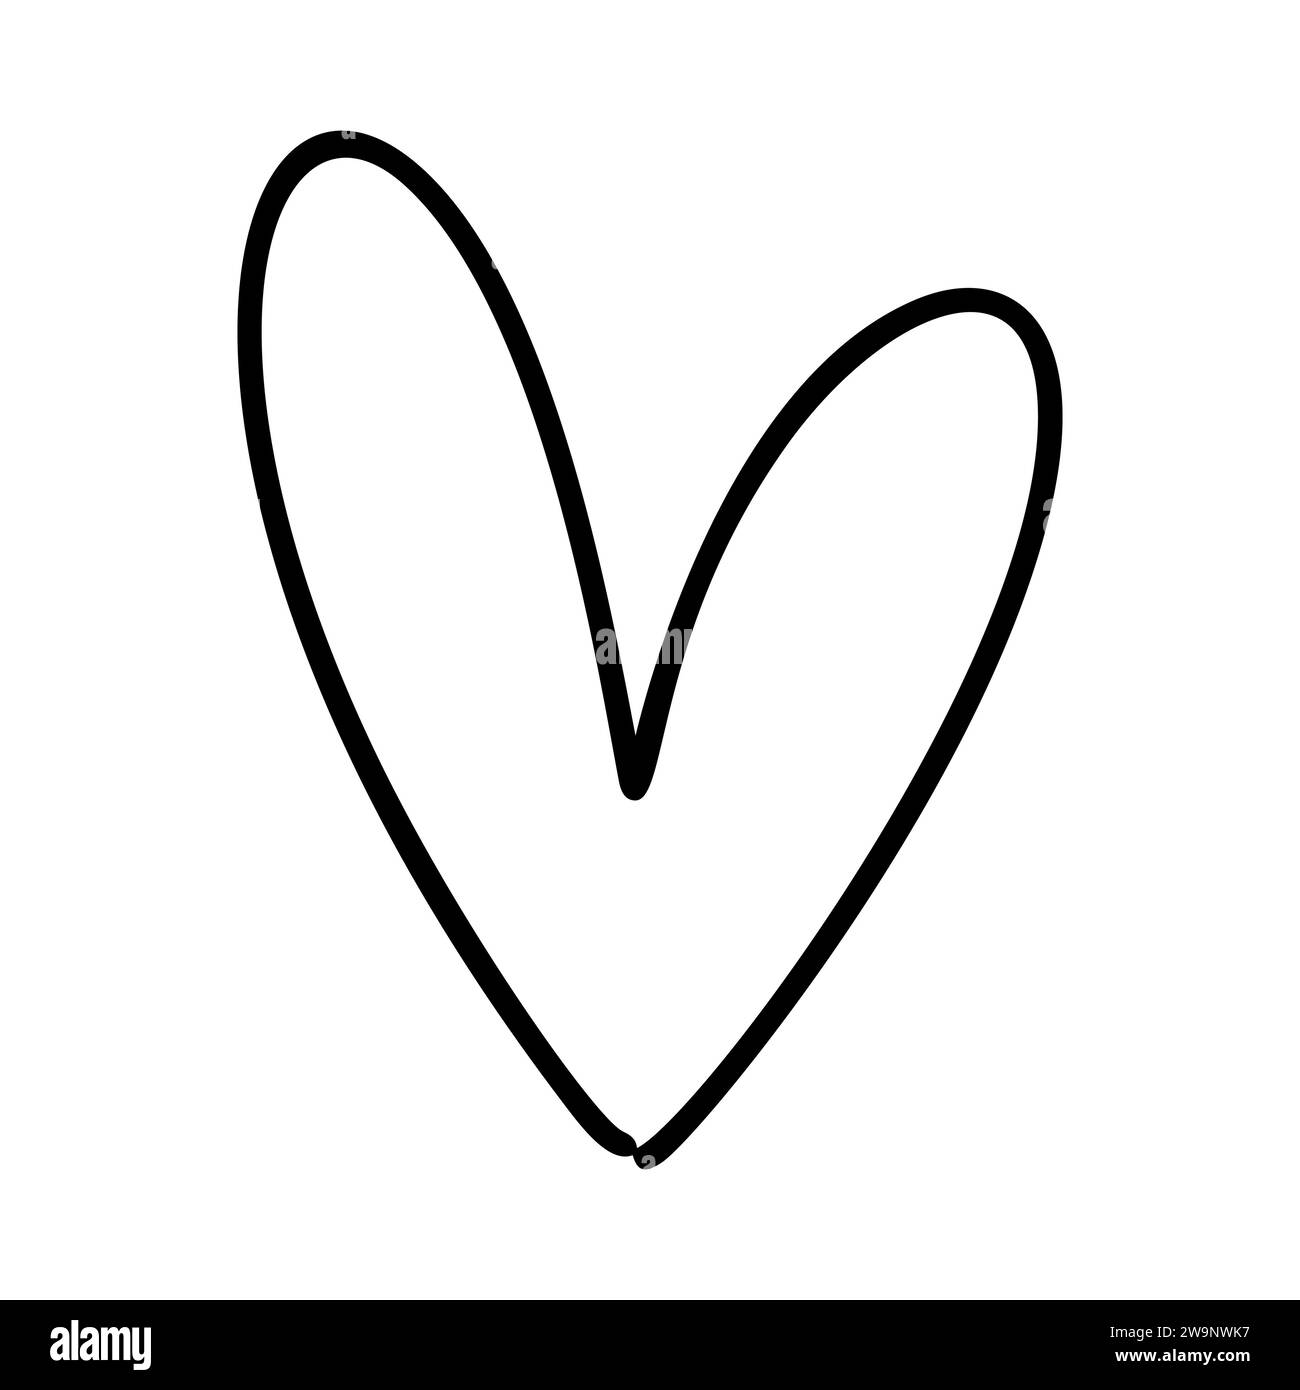 Hand gezeichnet Liebe Herz Vektor Logo Linie Illustration. Schwarze Kontur. Element Monoline für Valentinstag Banner, Poster, Grußkarte Stock Vektor